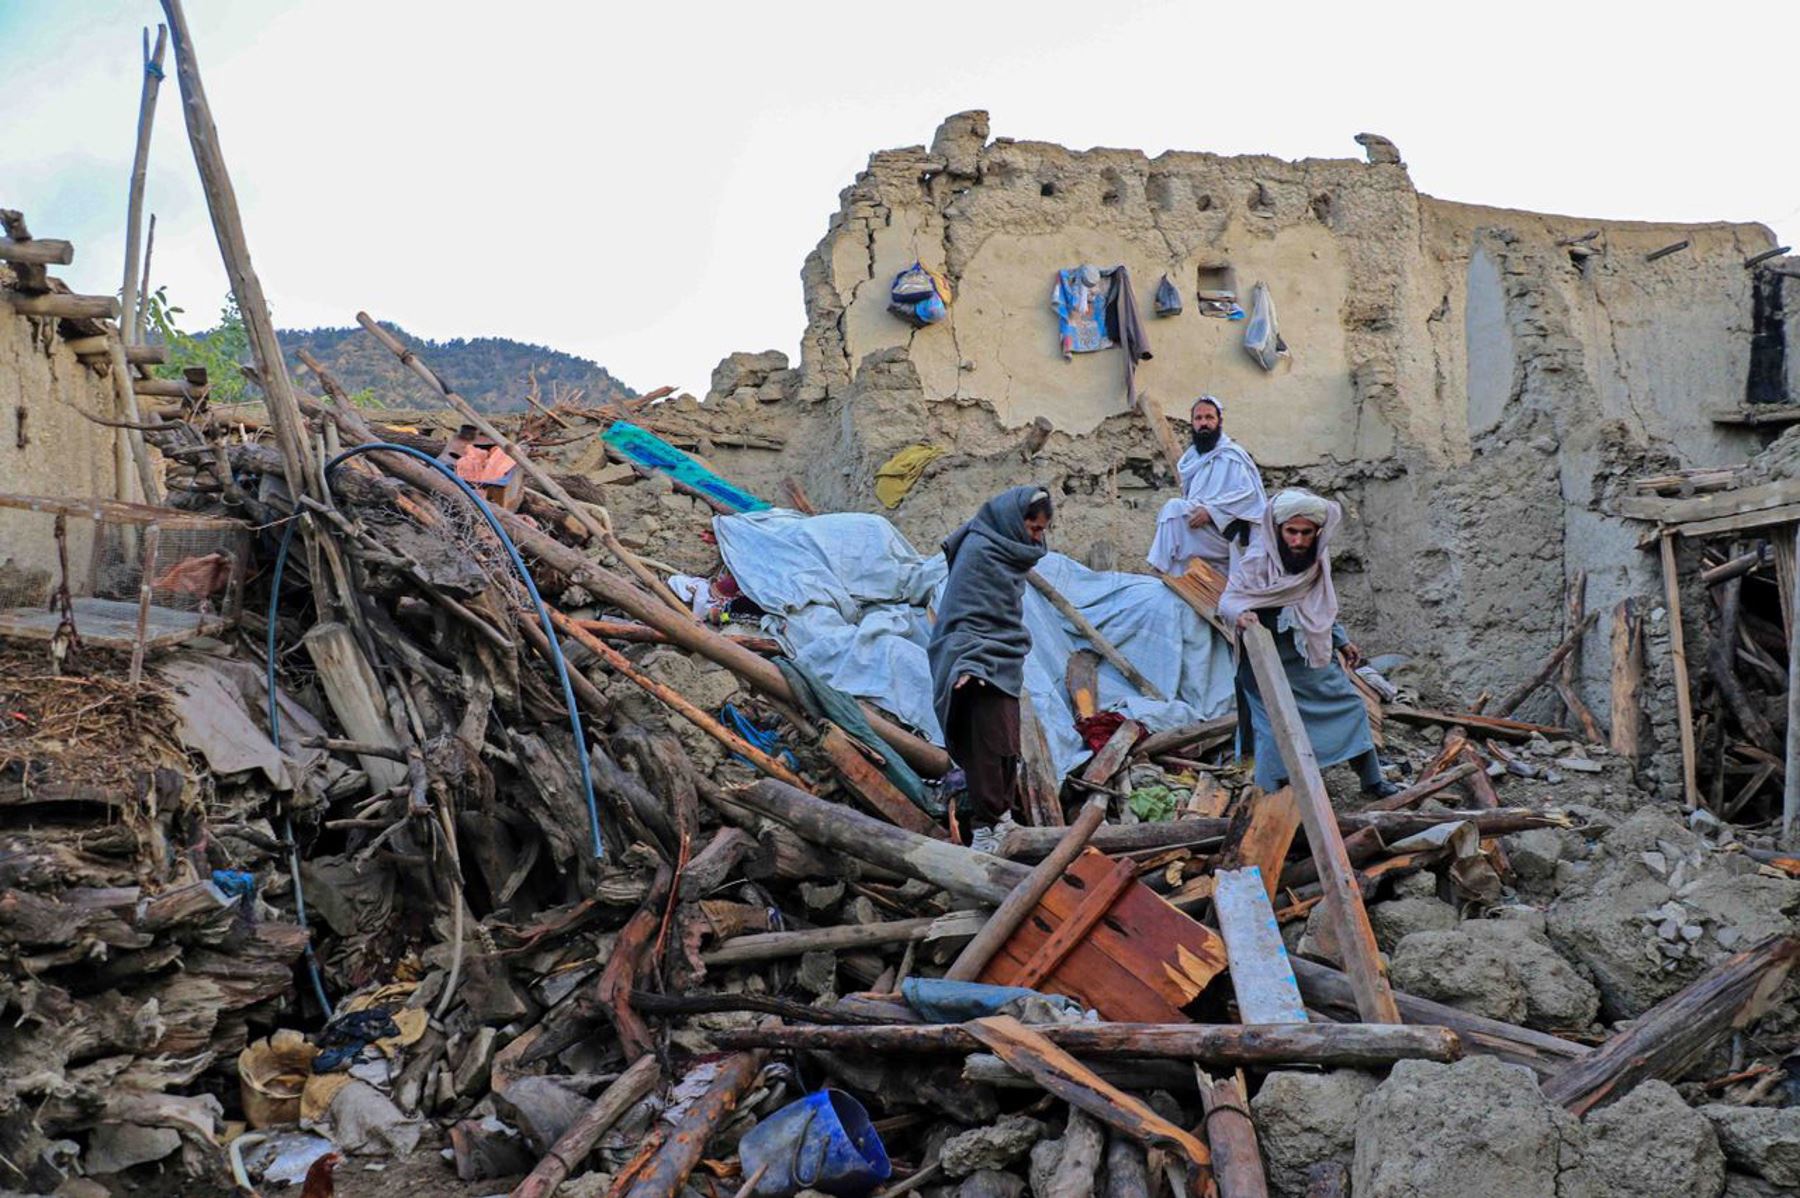 Personas afectadas por el terremoto esperan ayuda en la aldea de Gayan en la provincia de Paktia, Afganistán. Más de 1.000 personas murieron y más de 1.500 resultaron heridas después de que un terremoto de magnitud 5,9 azotara el este de Afganistán. Foto: EFE